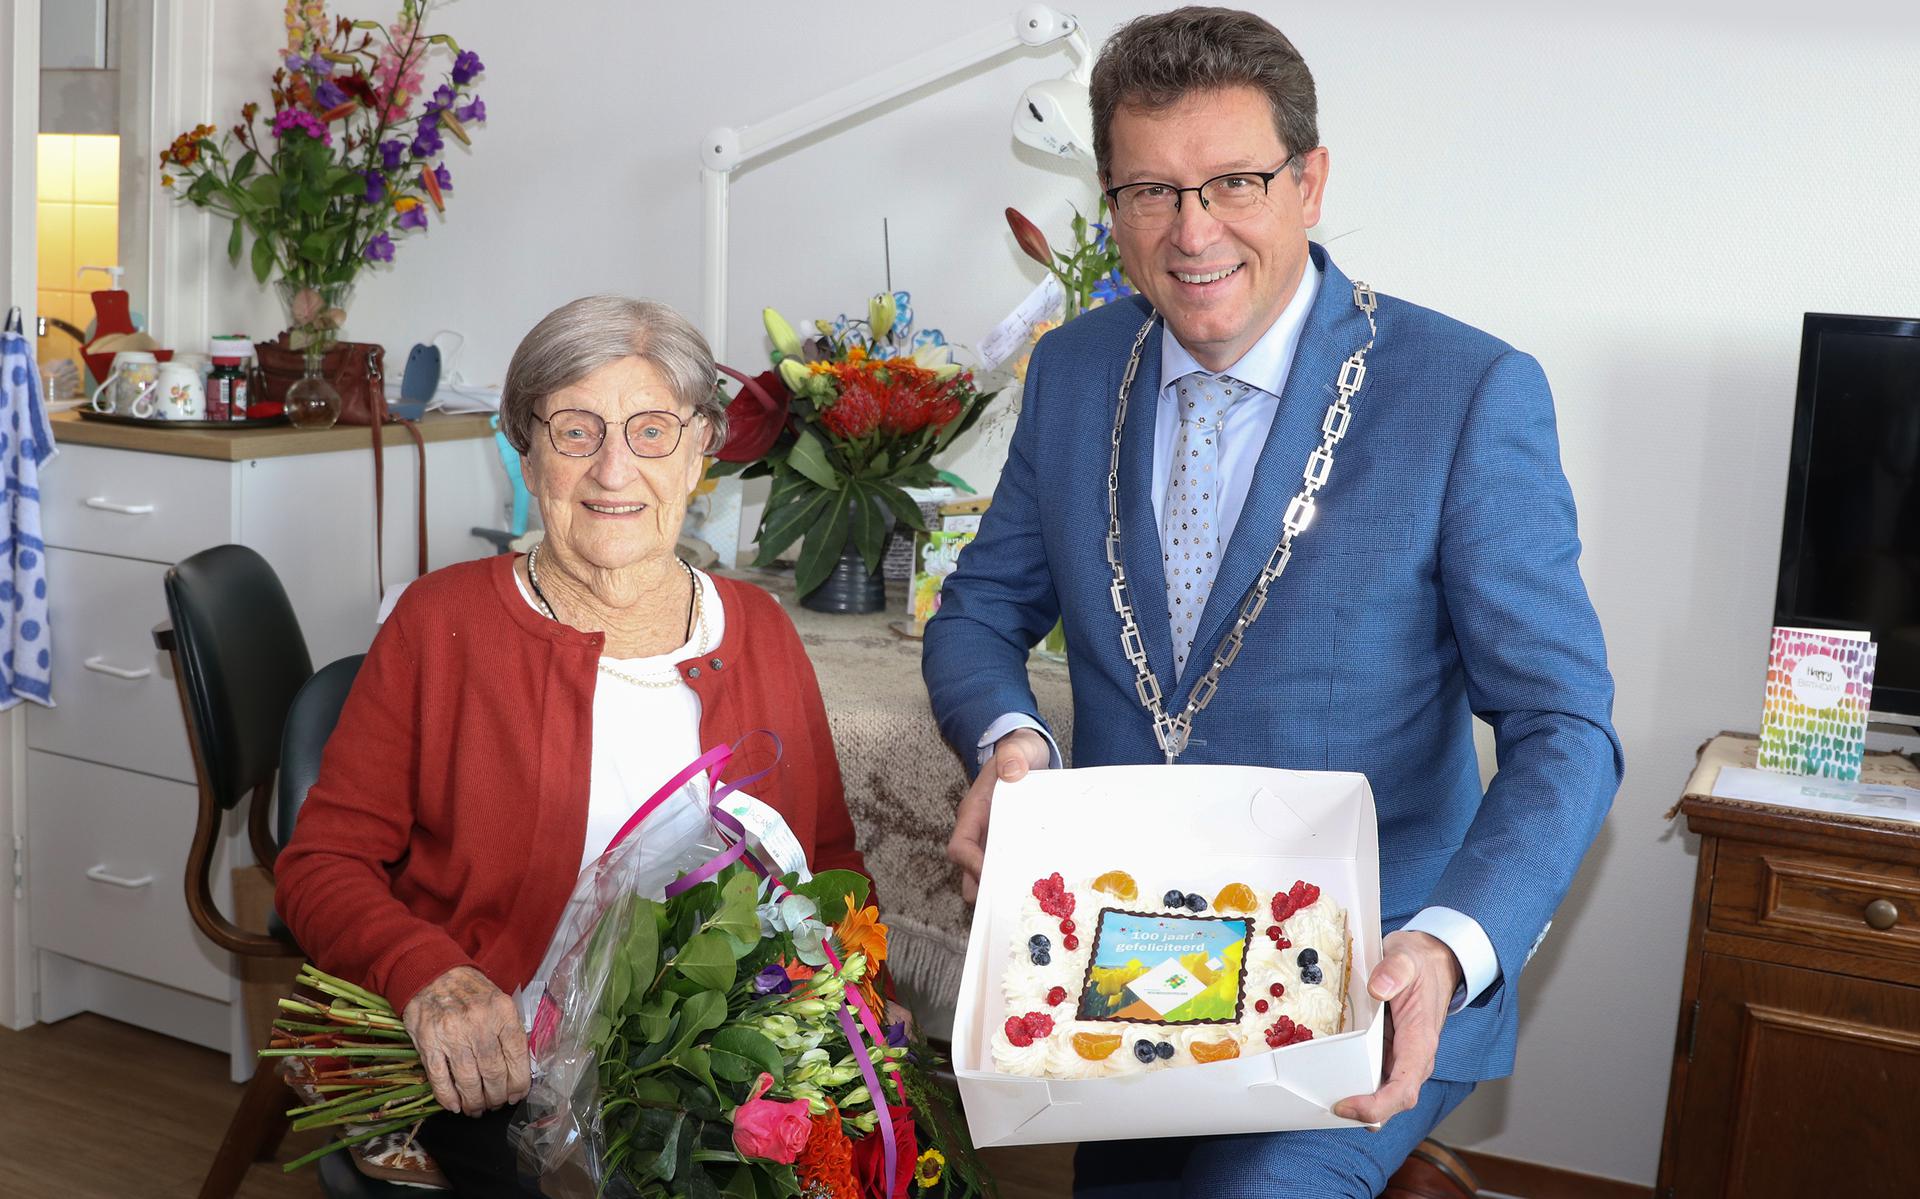 De felicitatietaart voor de 100-jarige Truus Middendorp-Post